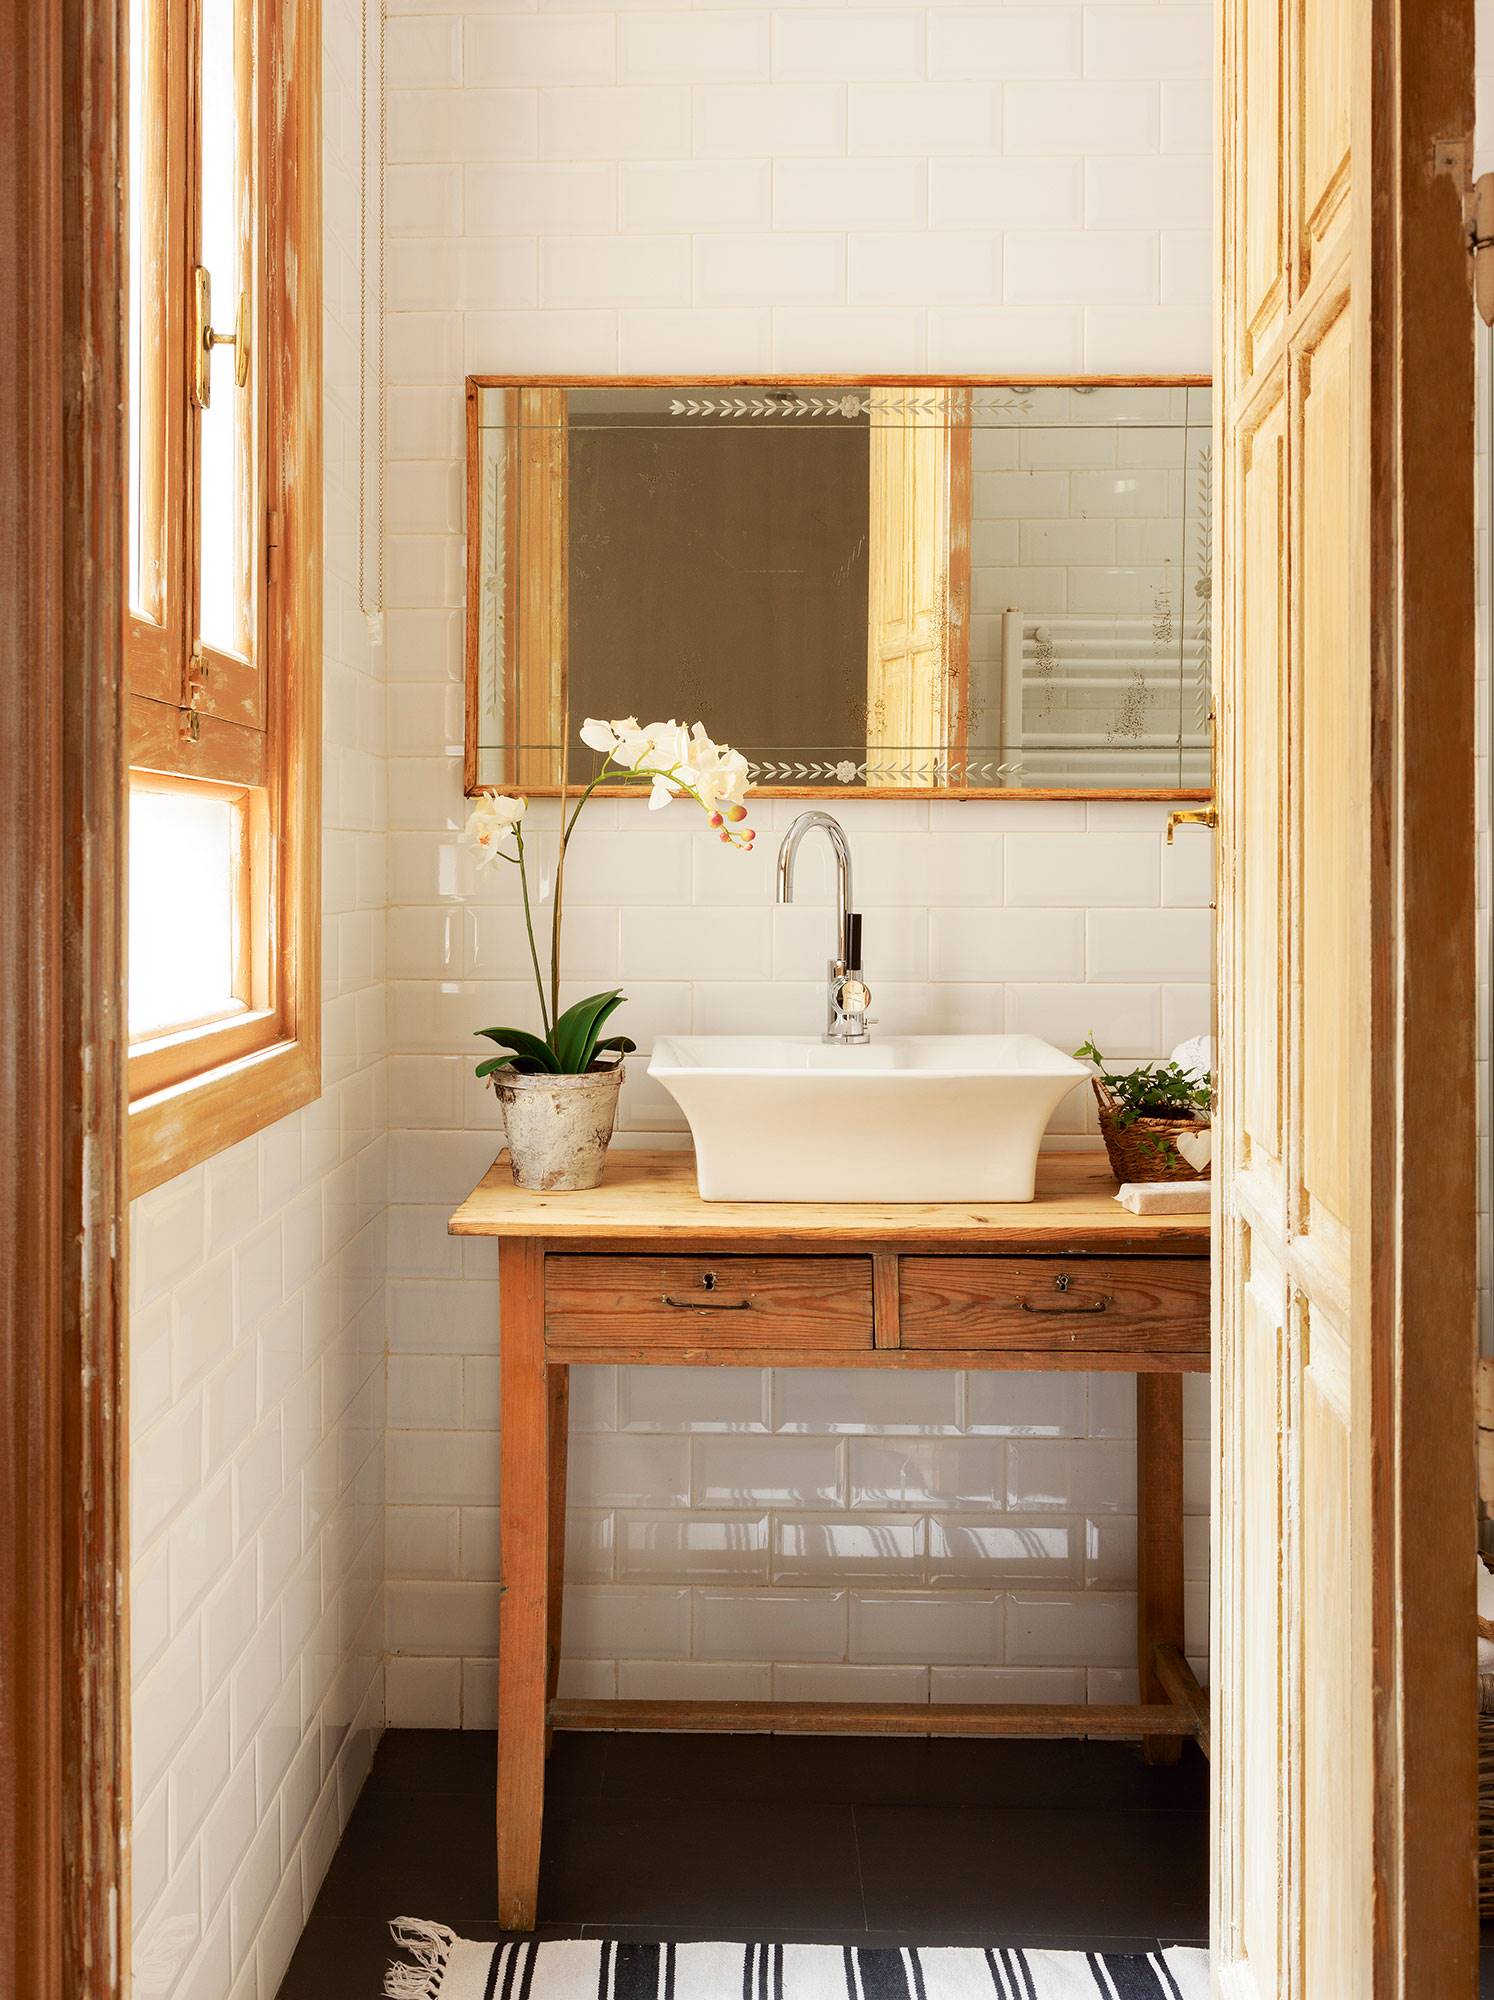 Baño pequeño de estilo rústico con azulejos tipo metro blancos, espejo antiguo con marco de madera y mesa recuperada de madera.